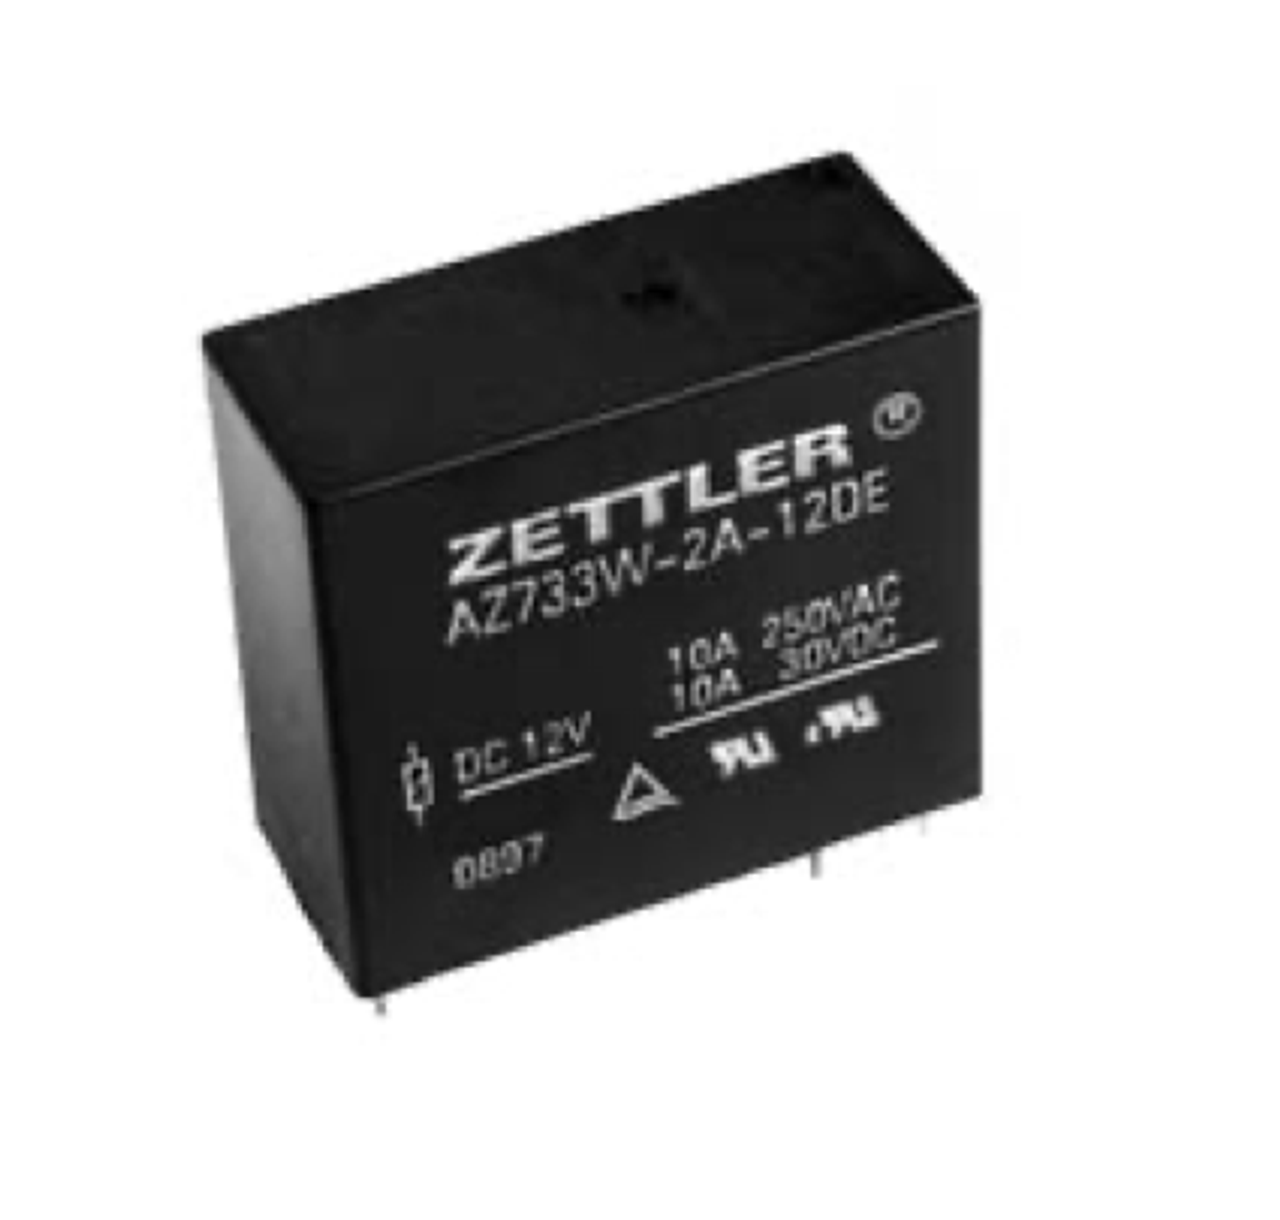 American Zettler AZ733W-2A-9DE Power Relay